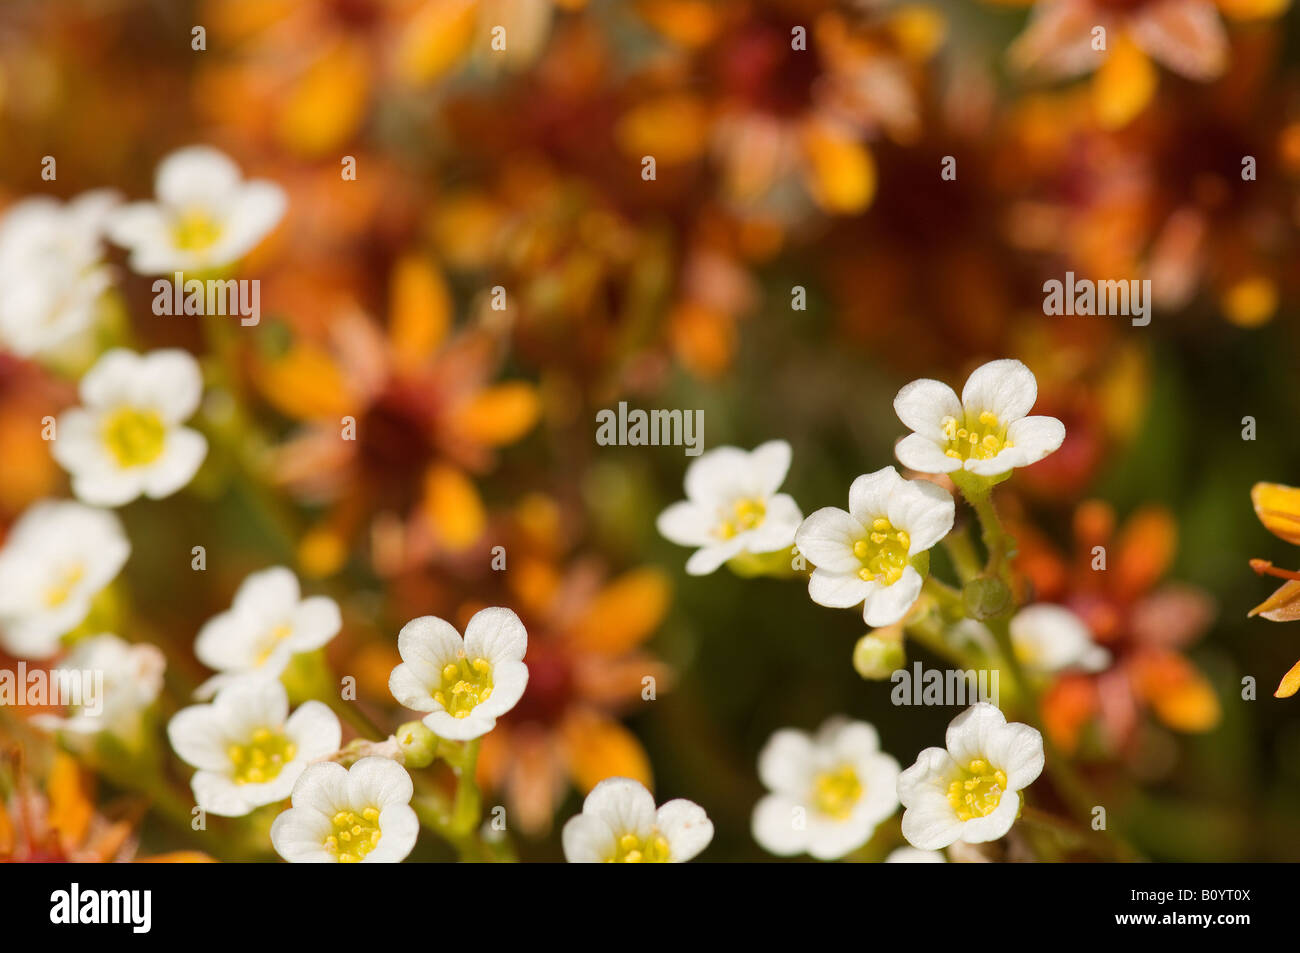 White Mountain Saxifrage (Saxifraga paniculata), close-up Stock Photo